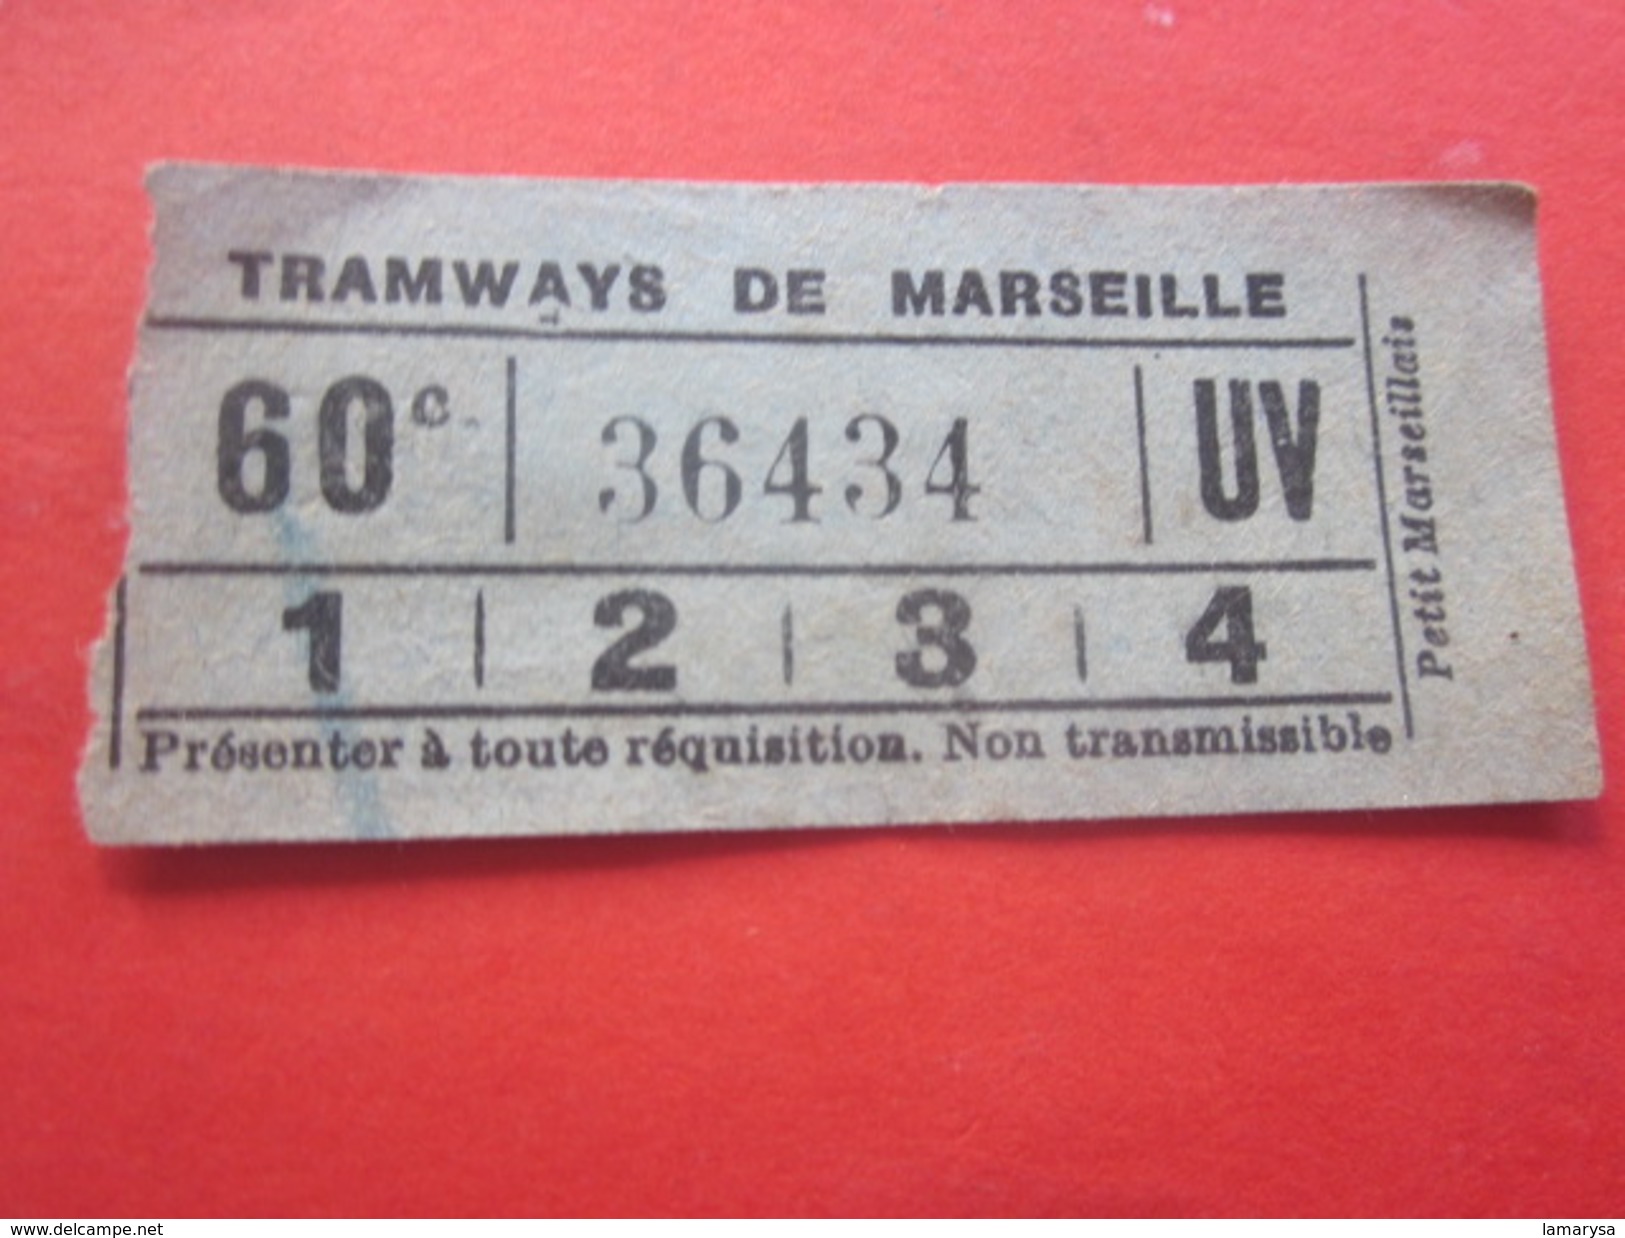 1880 Ancien Titre De Transport Billet Ticket Simple De Tramway De Marseille France Devise Ou Morale Civique Au Verso... - Europa